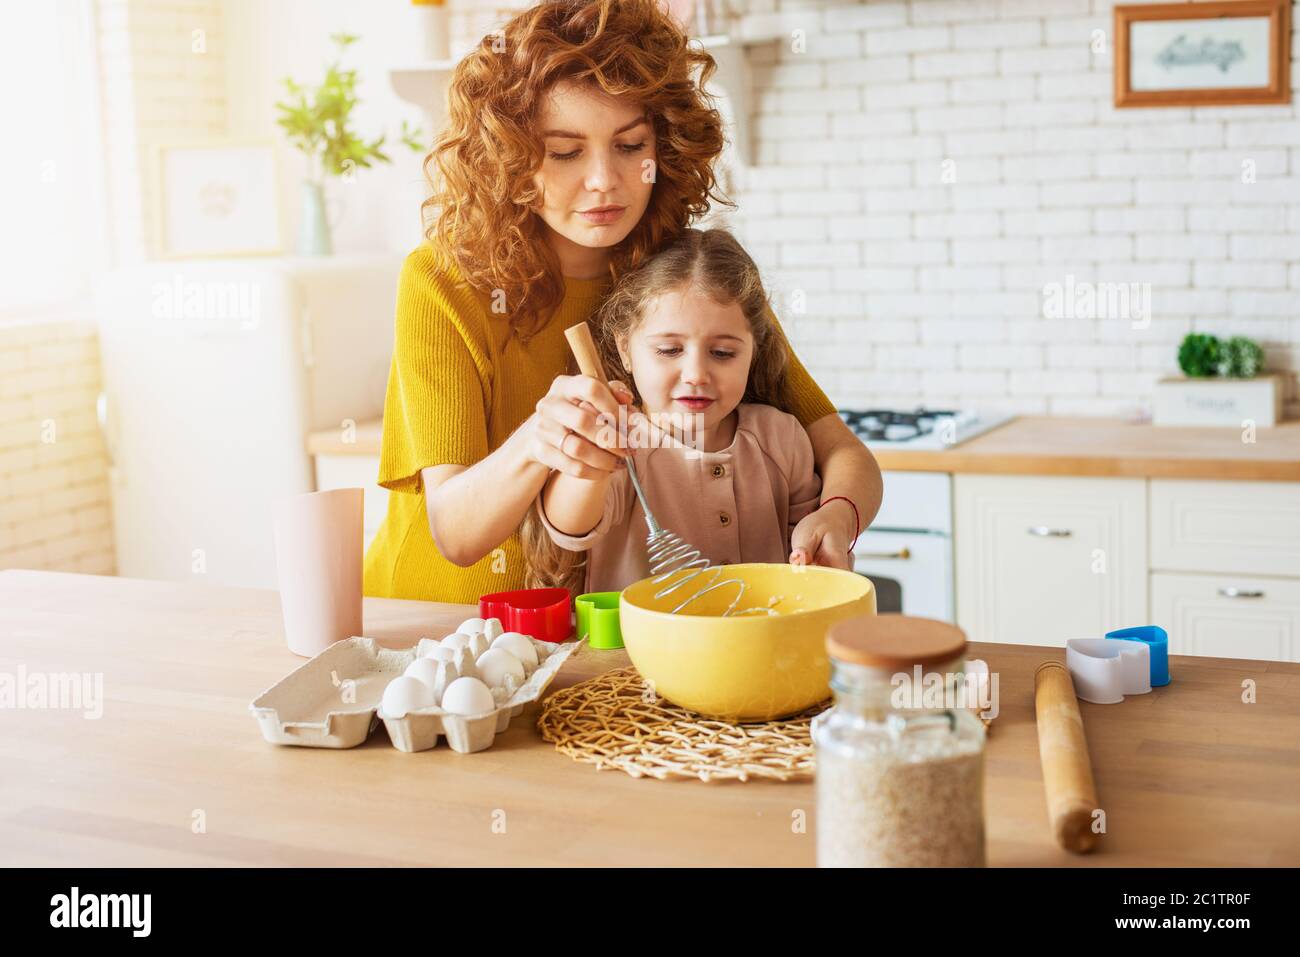 La madre y la hija preparan un pastel juntos en la cocina Foto de stock